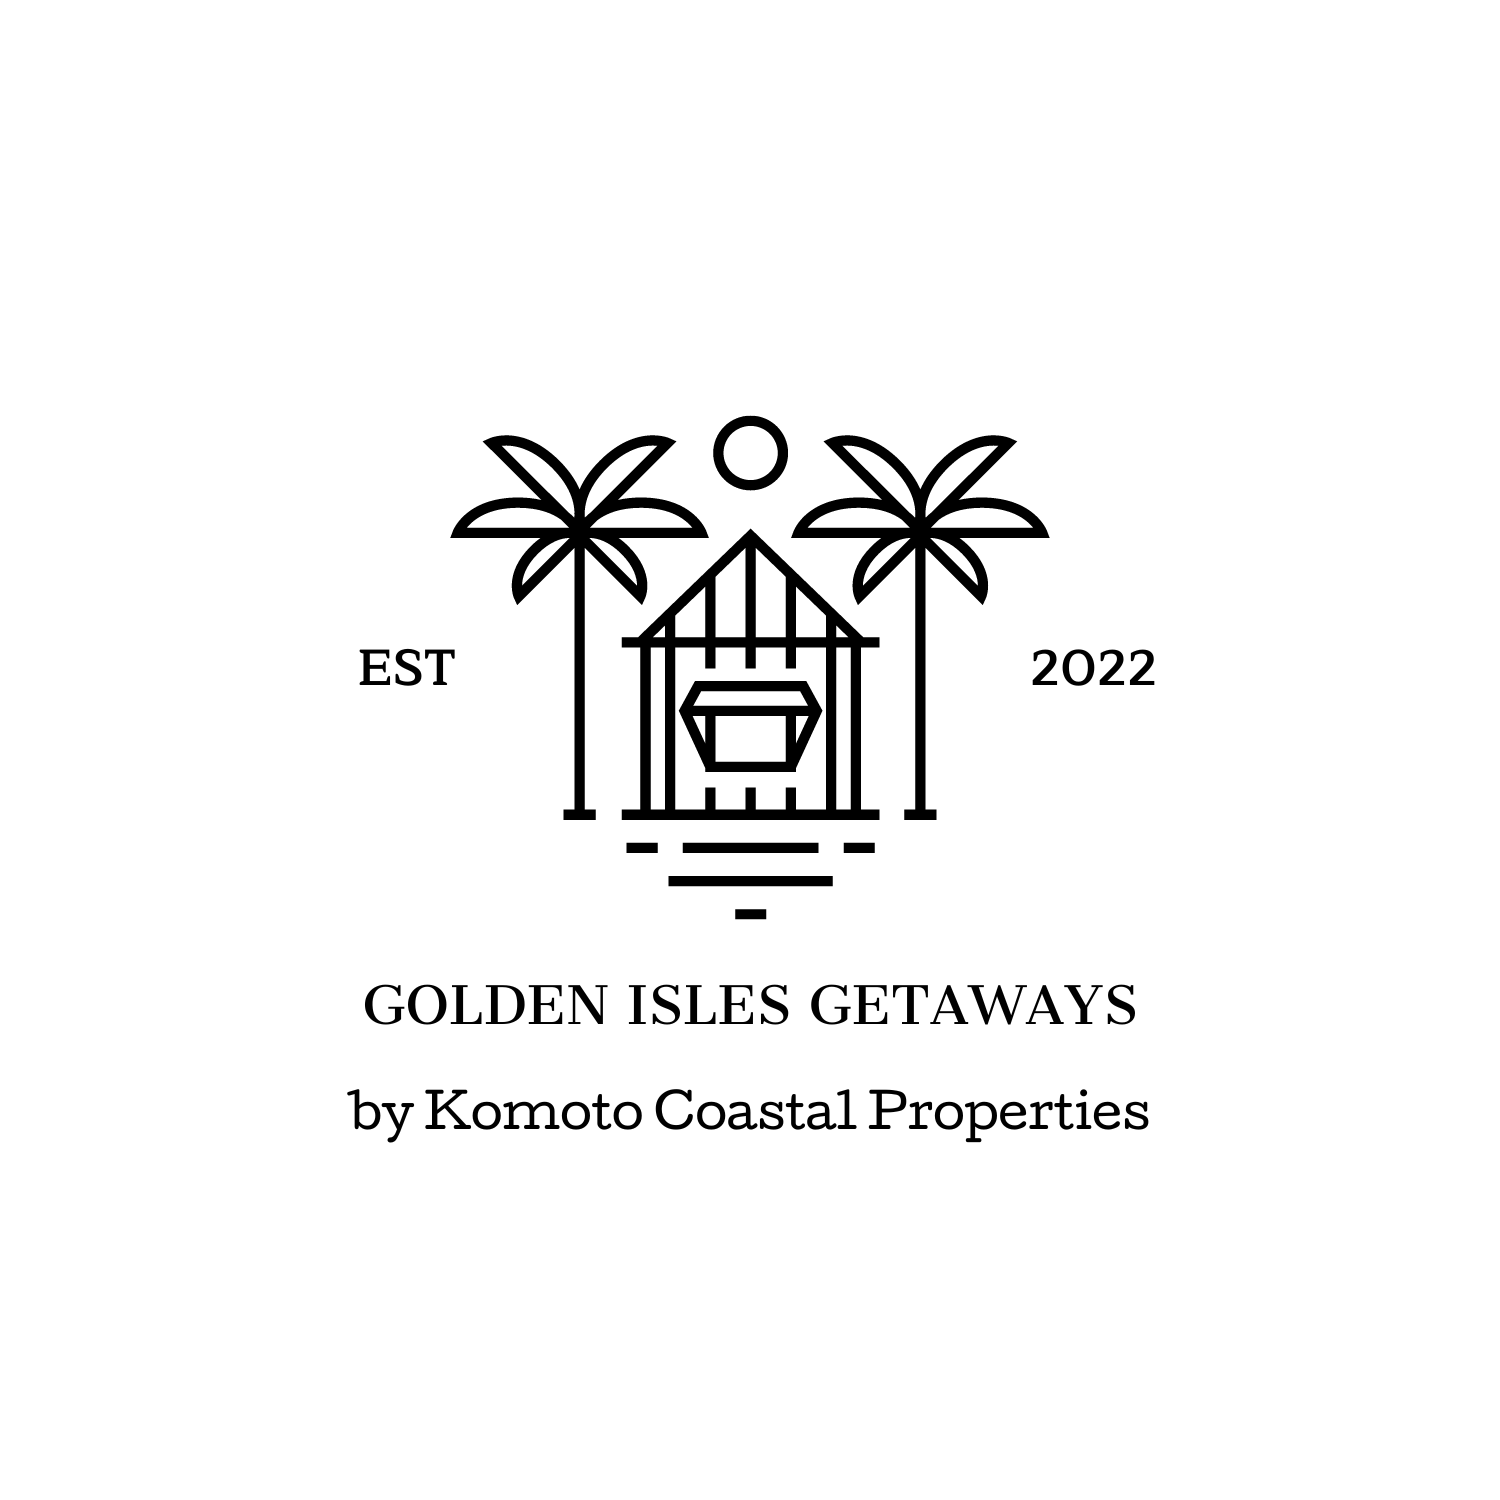 Golden Isles Getaways